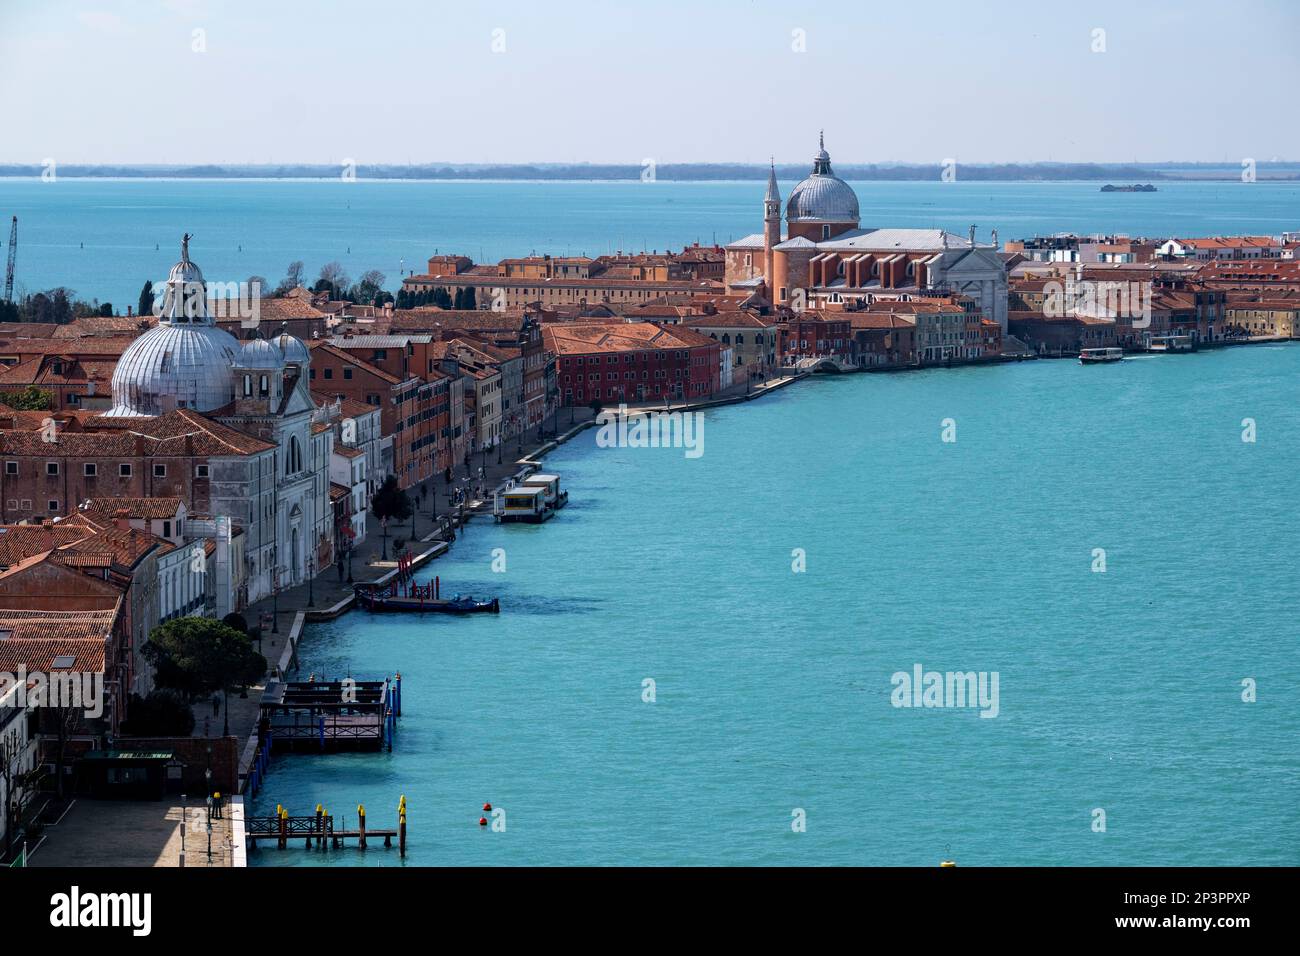 View from the Campanile di San Giorgio Maggiore across the Canale Della Giudecca  towards Venice, Italy. Stock Photo